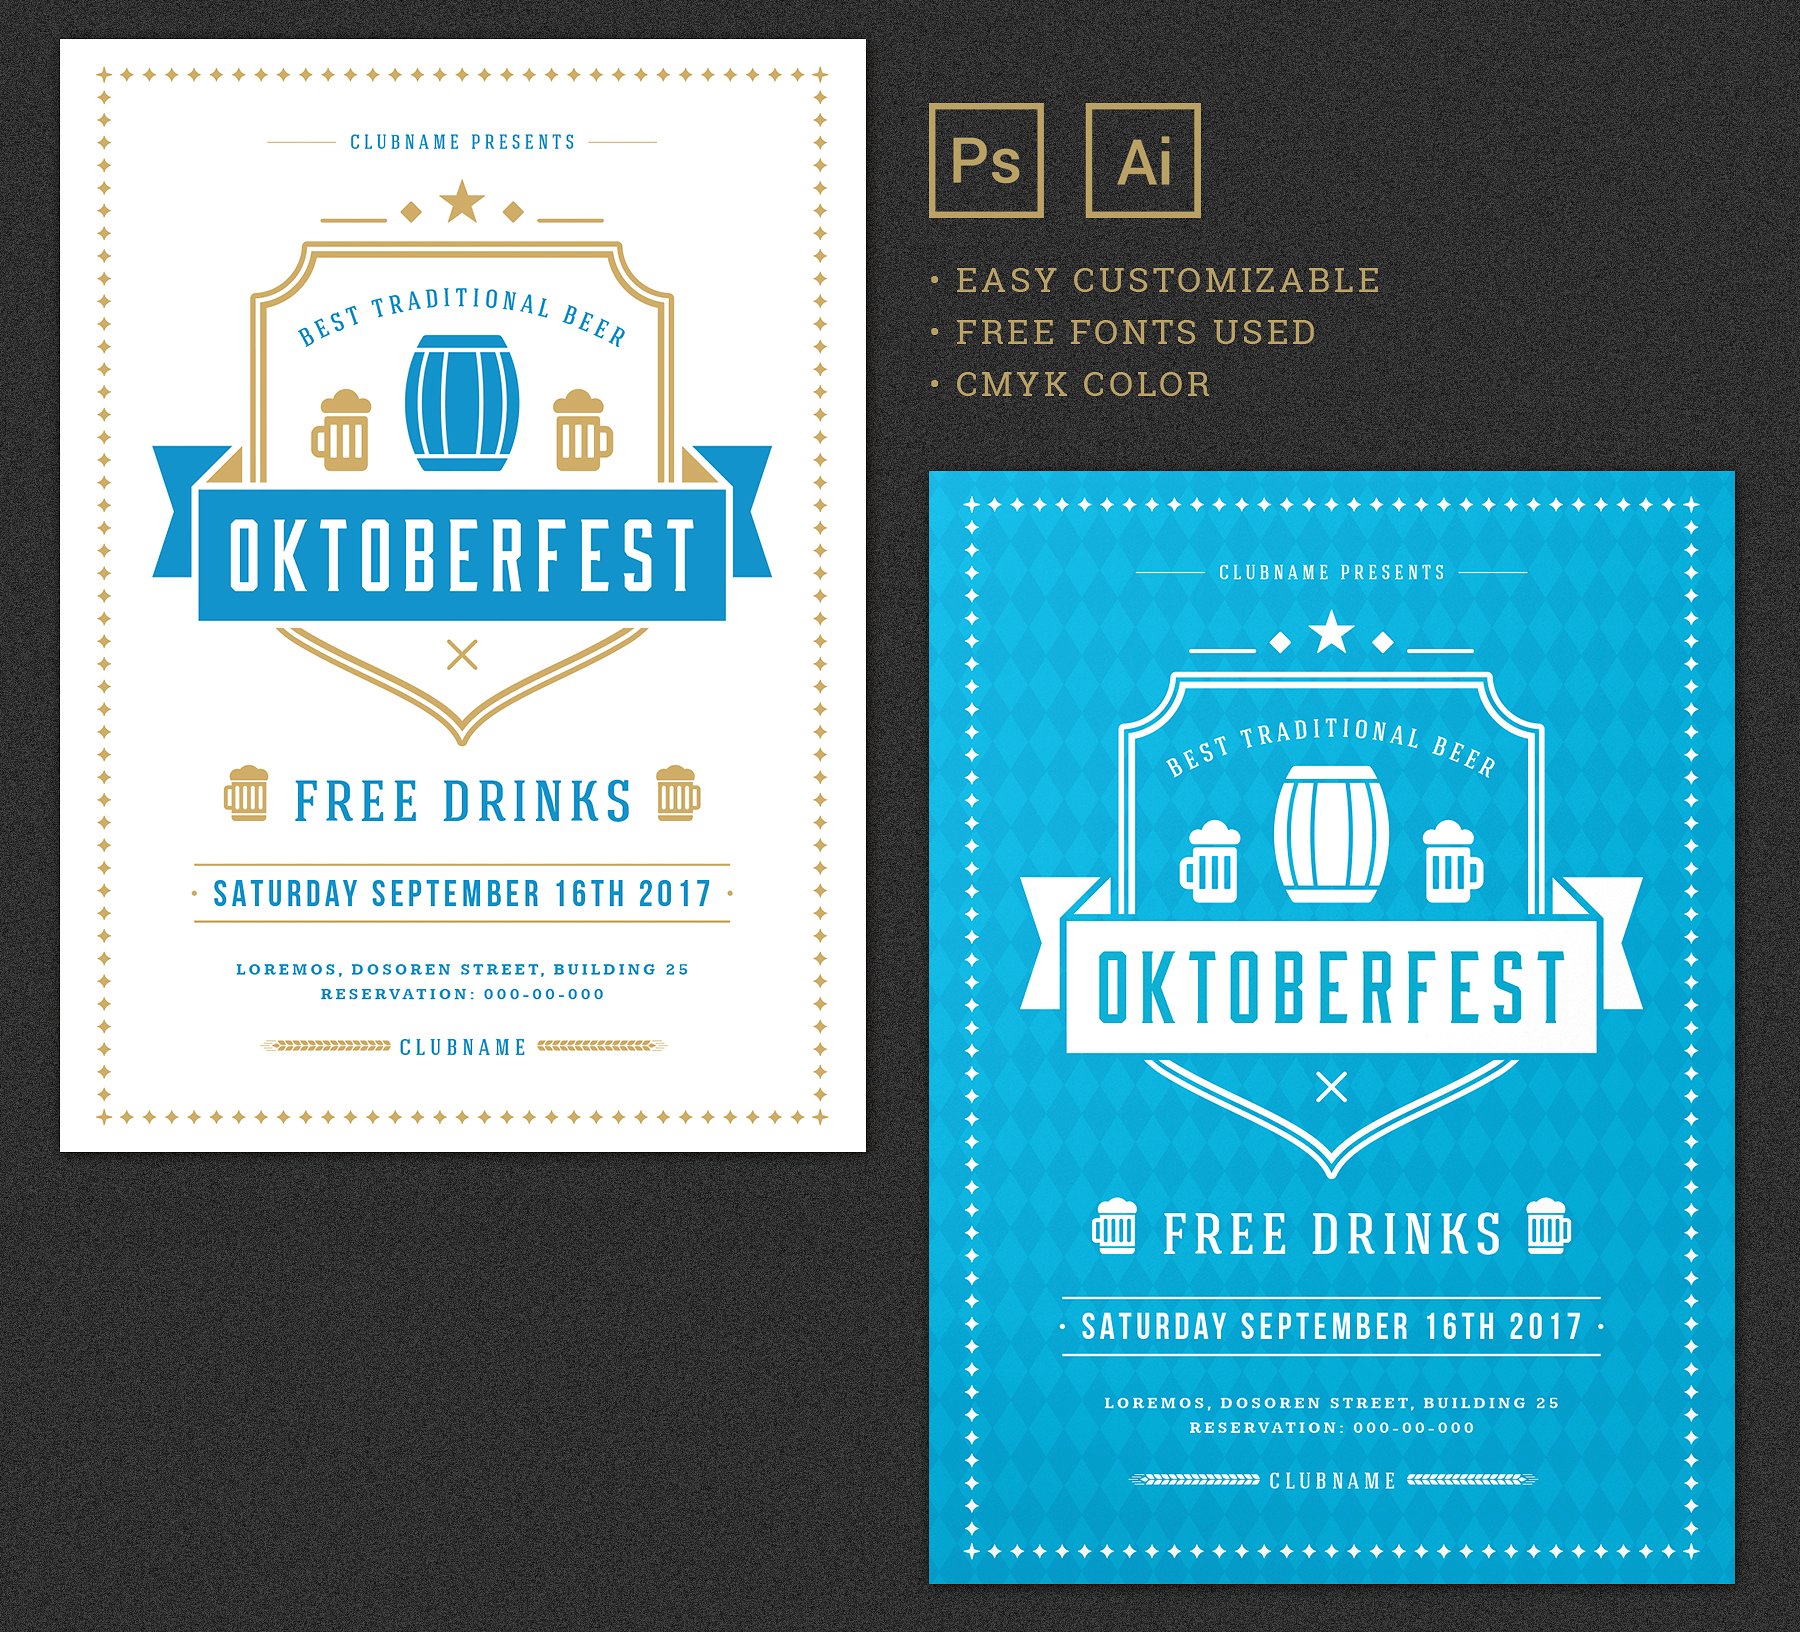 经典设计风格啤酒节海报模板素材 Oktoberfest Flyer Template插图